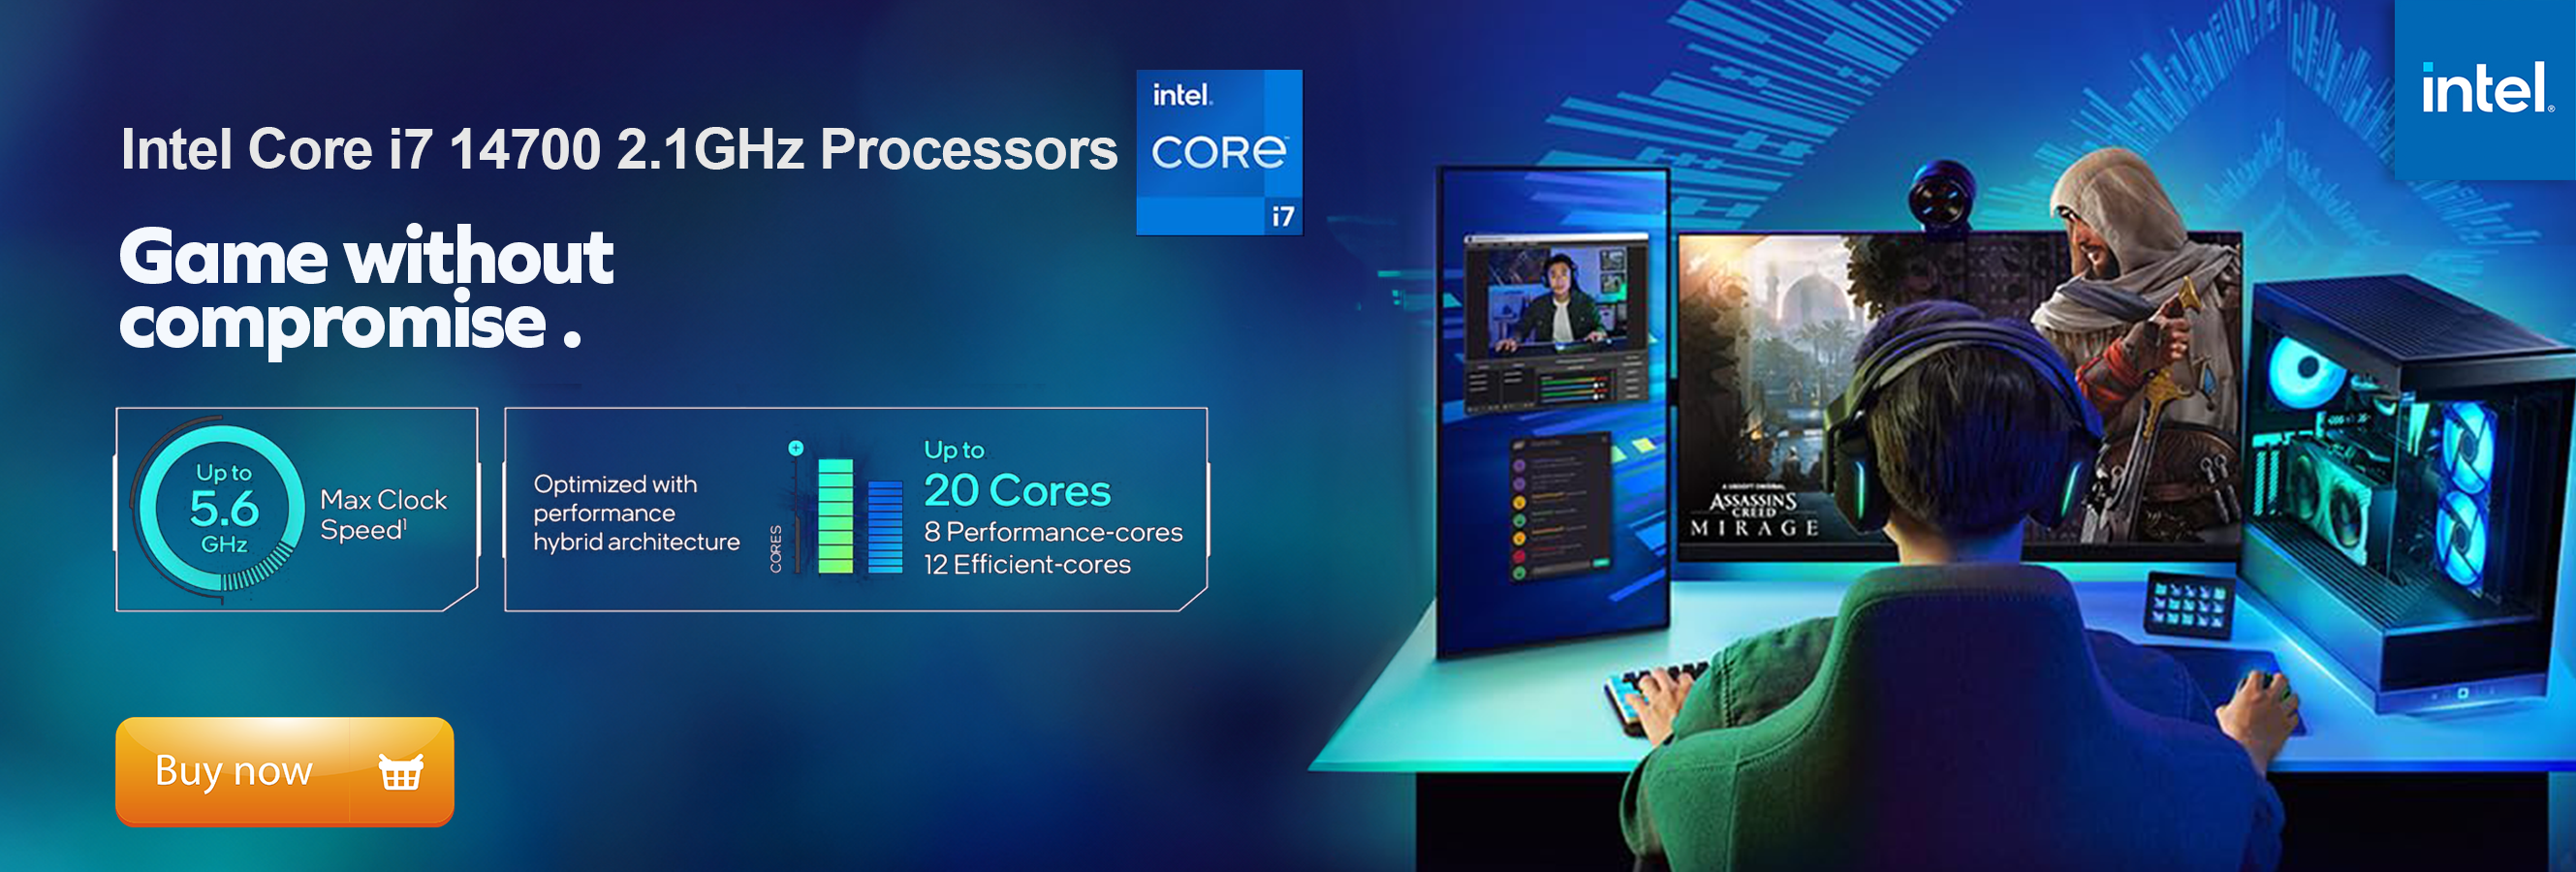 Intel Core i7 14700 2.1GHz Processor